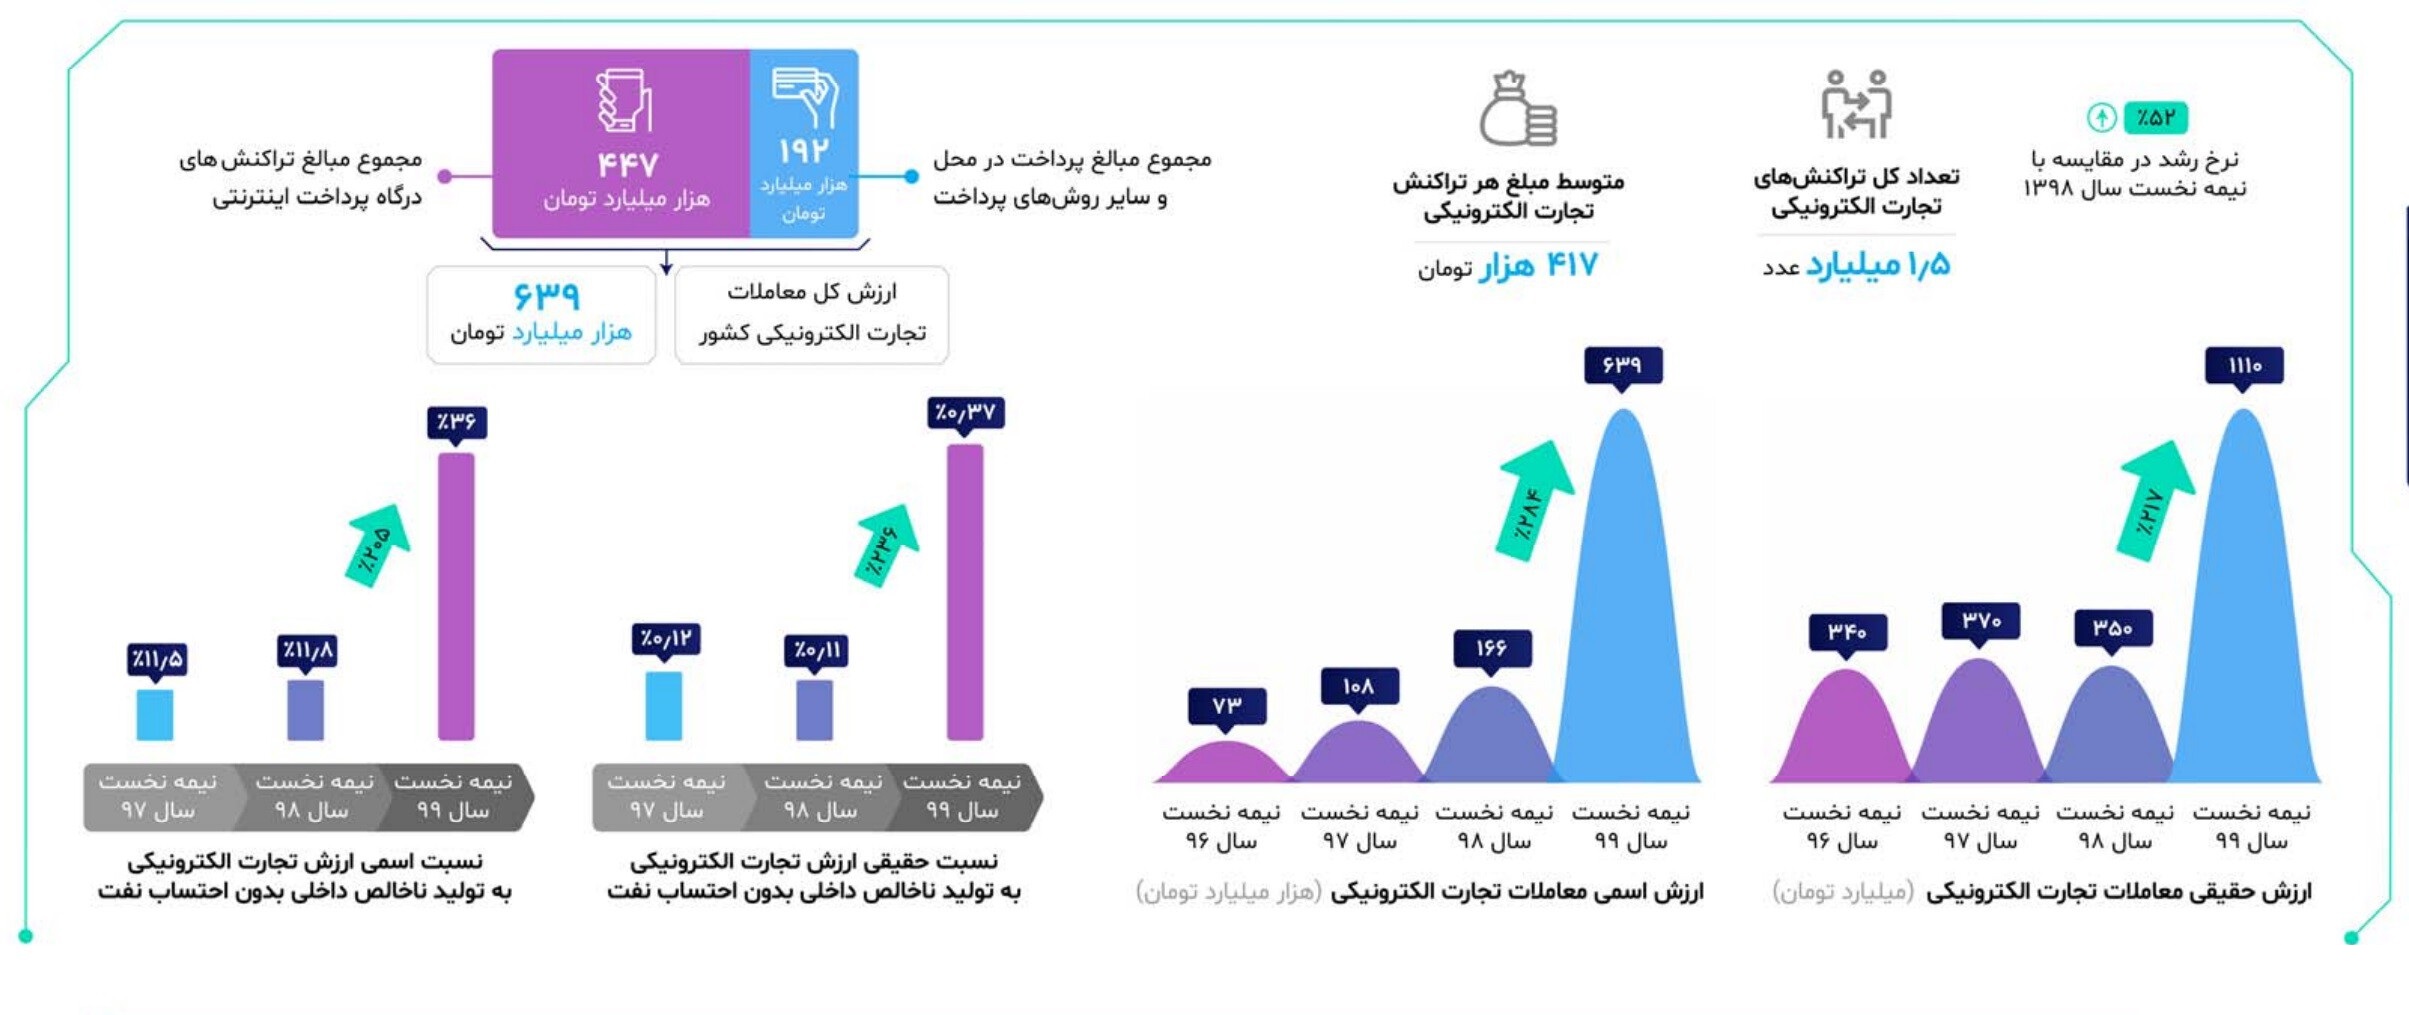 حجم تجارت الکترونیکی ایران در نیمه اول سال ۹۹ به ۶۳۹ هزار میلیارد تومان رسید